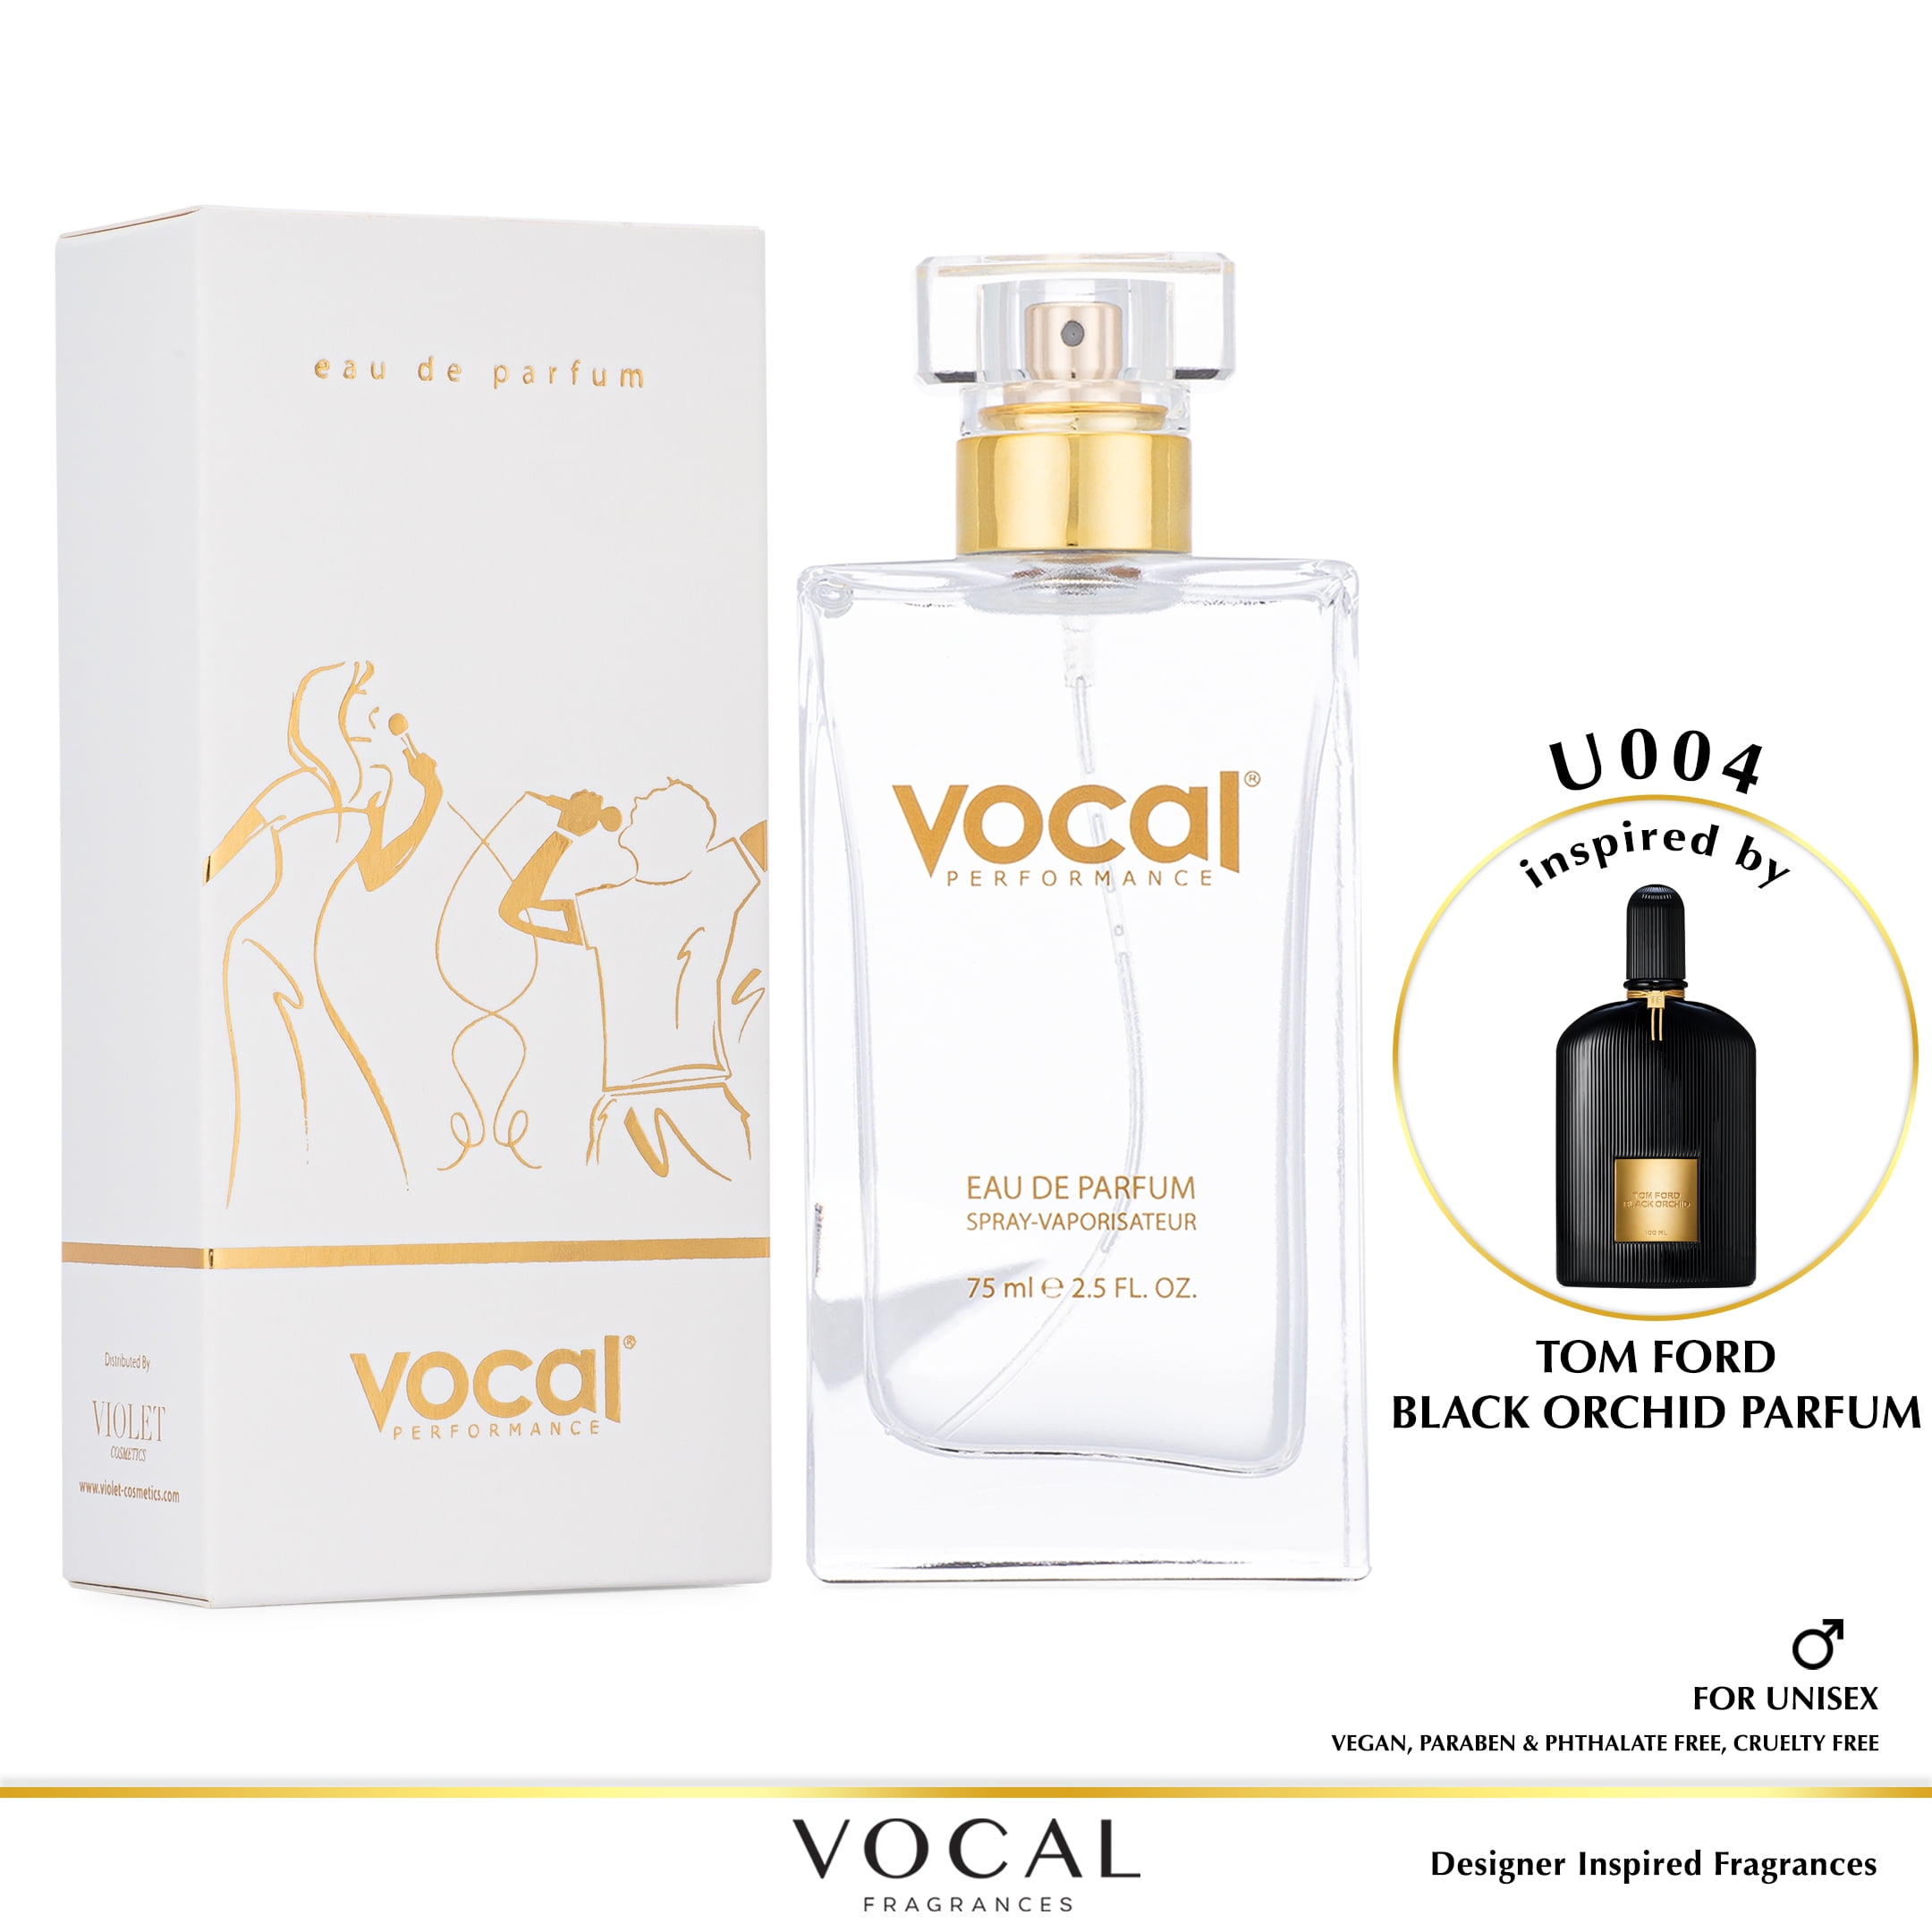 Overflødig pakke Påstand Vocal Fragrance Inspired by Tom Ford Black Orchid Eau de Parfum For Unisex  2.5 FL. OZ. 75 ml. Vegan, Paraben & Phthalate Free Never Tested on Animals  - Walmart.com